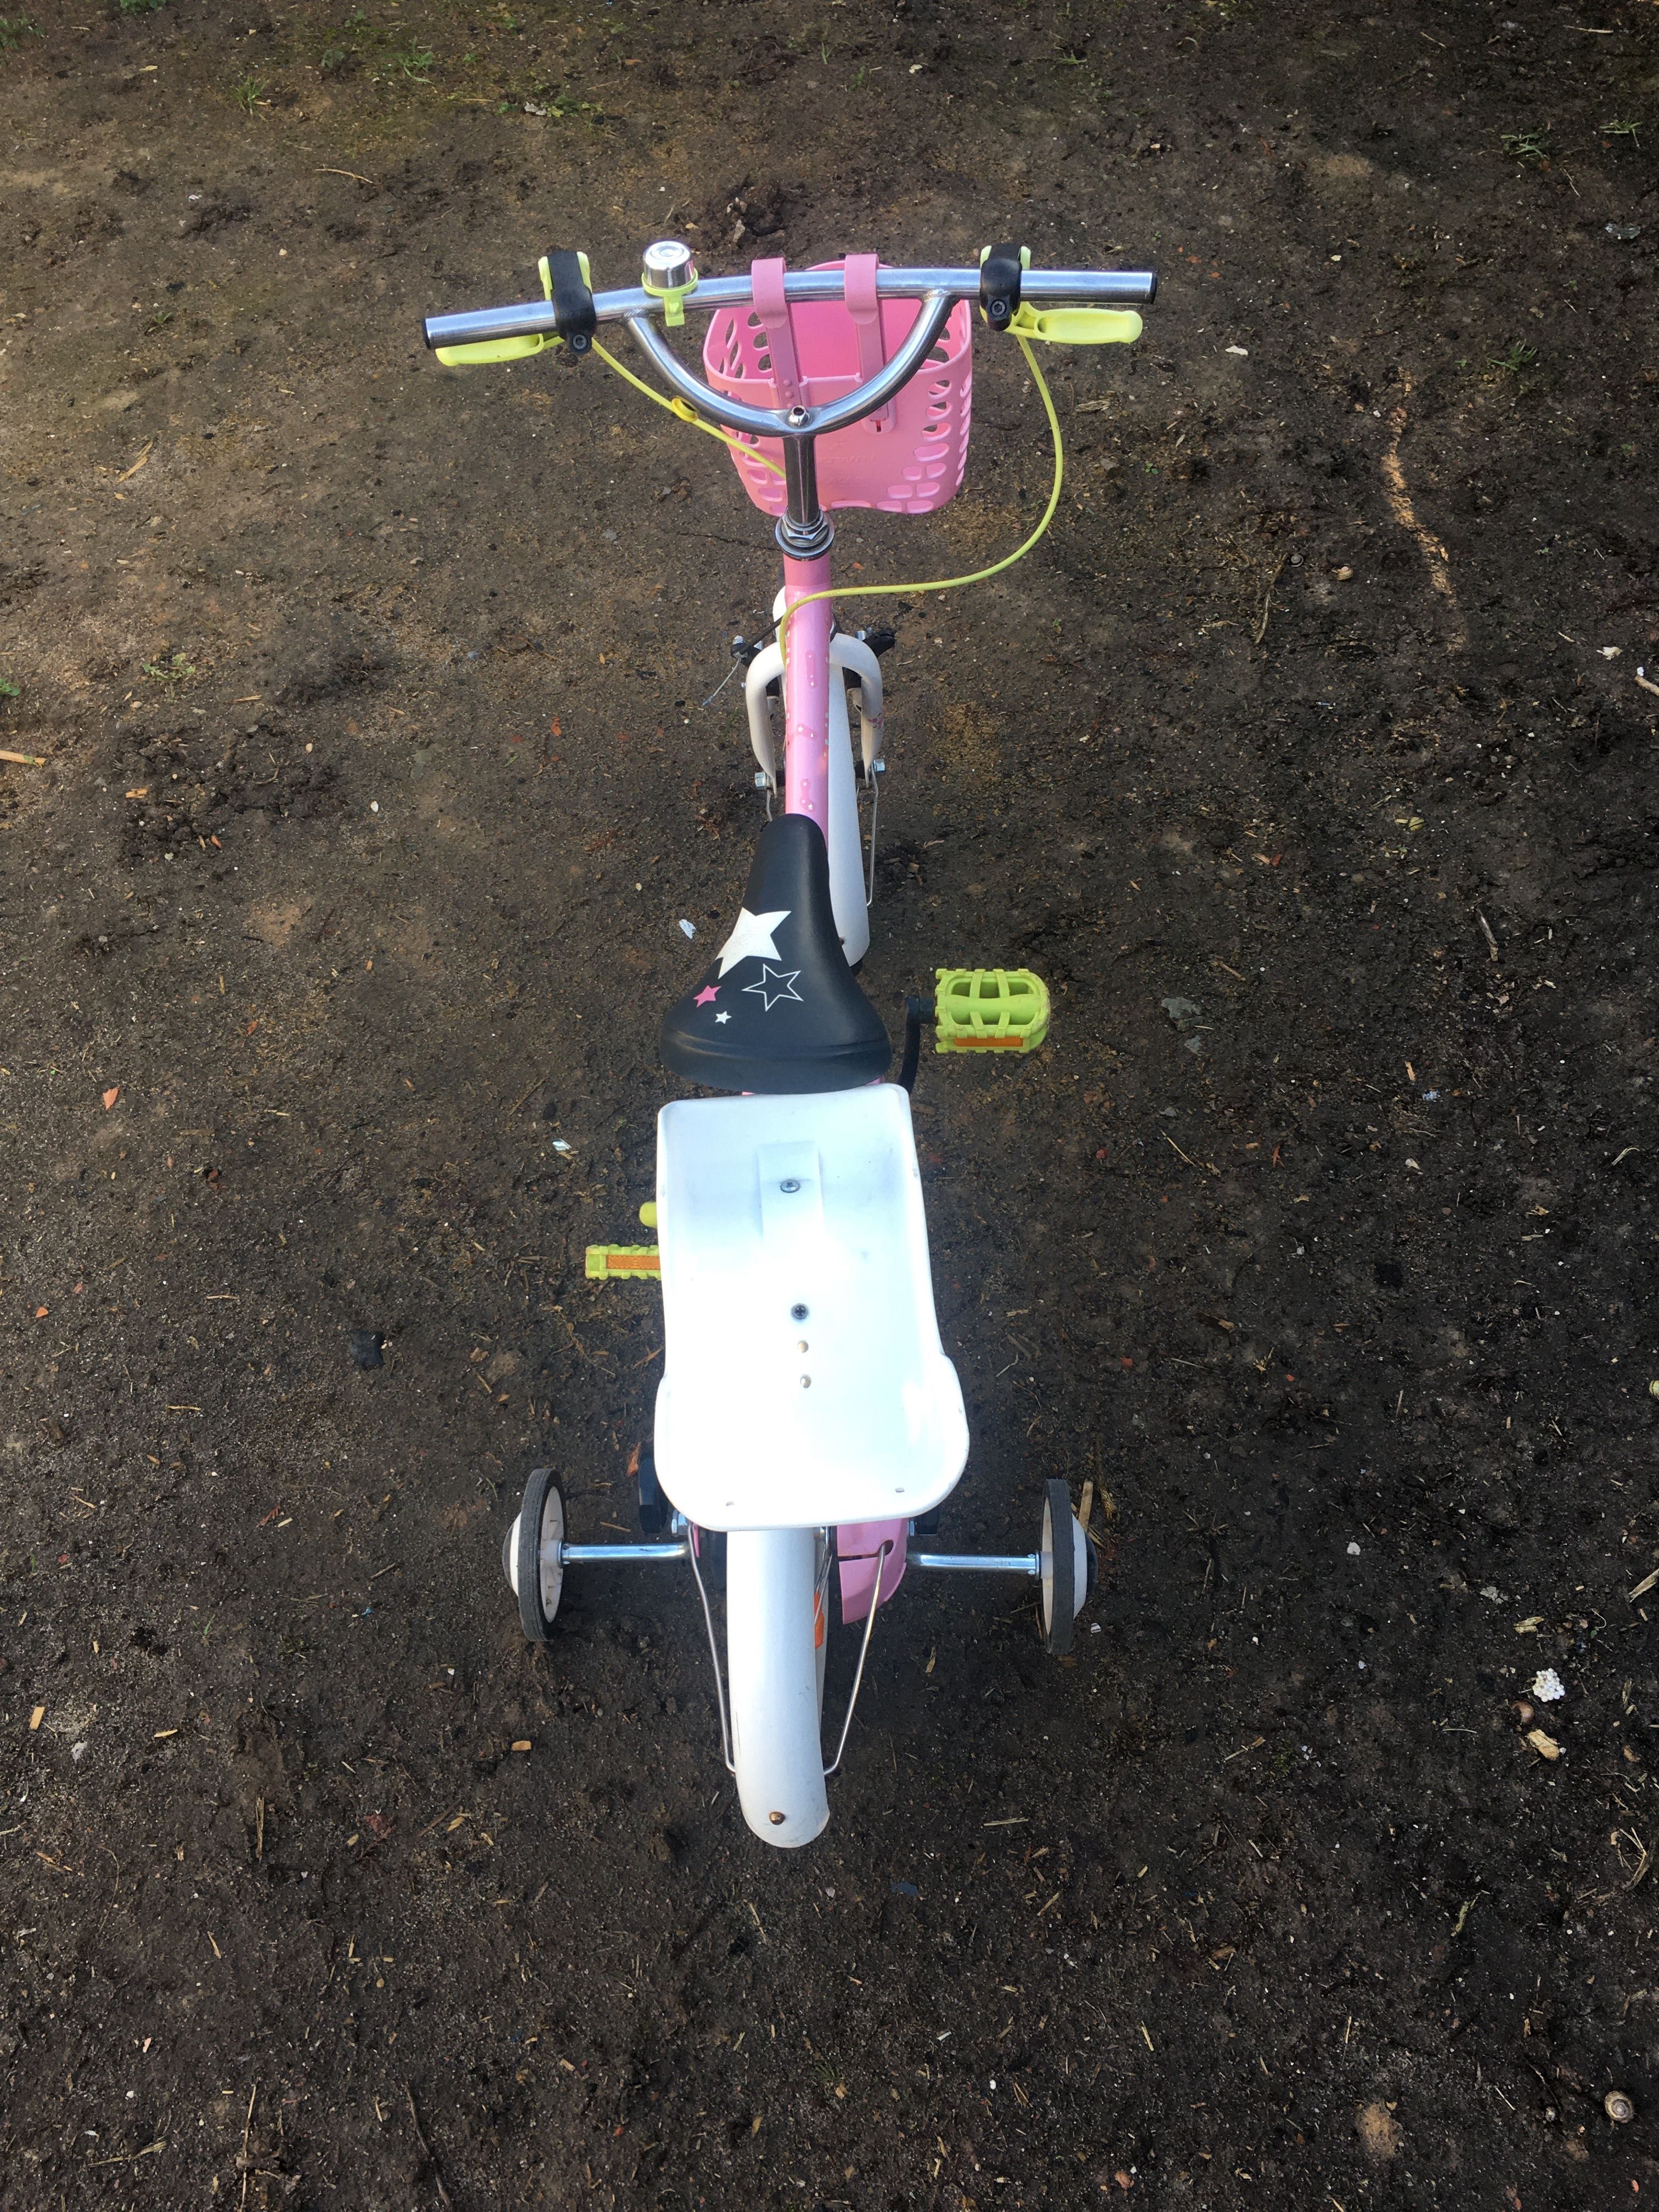 Rower dla dziewczyny